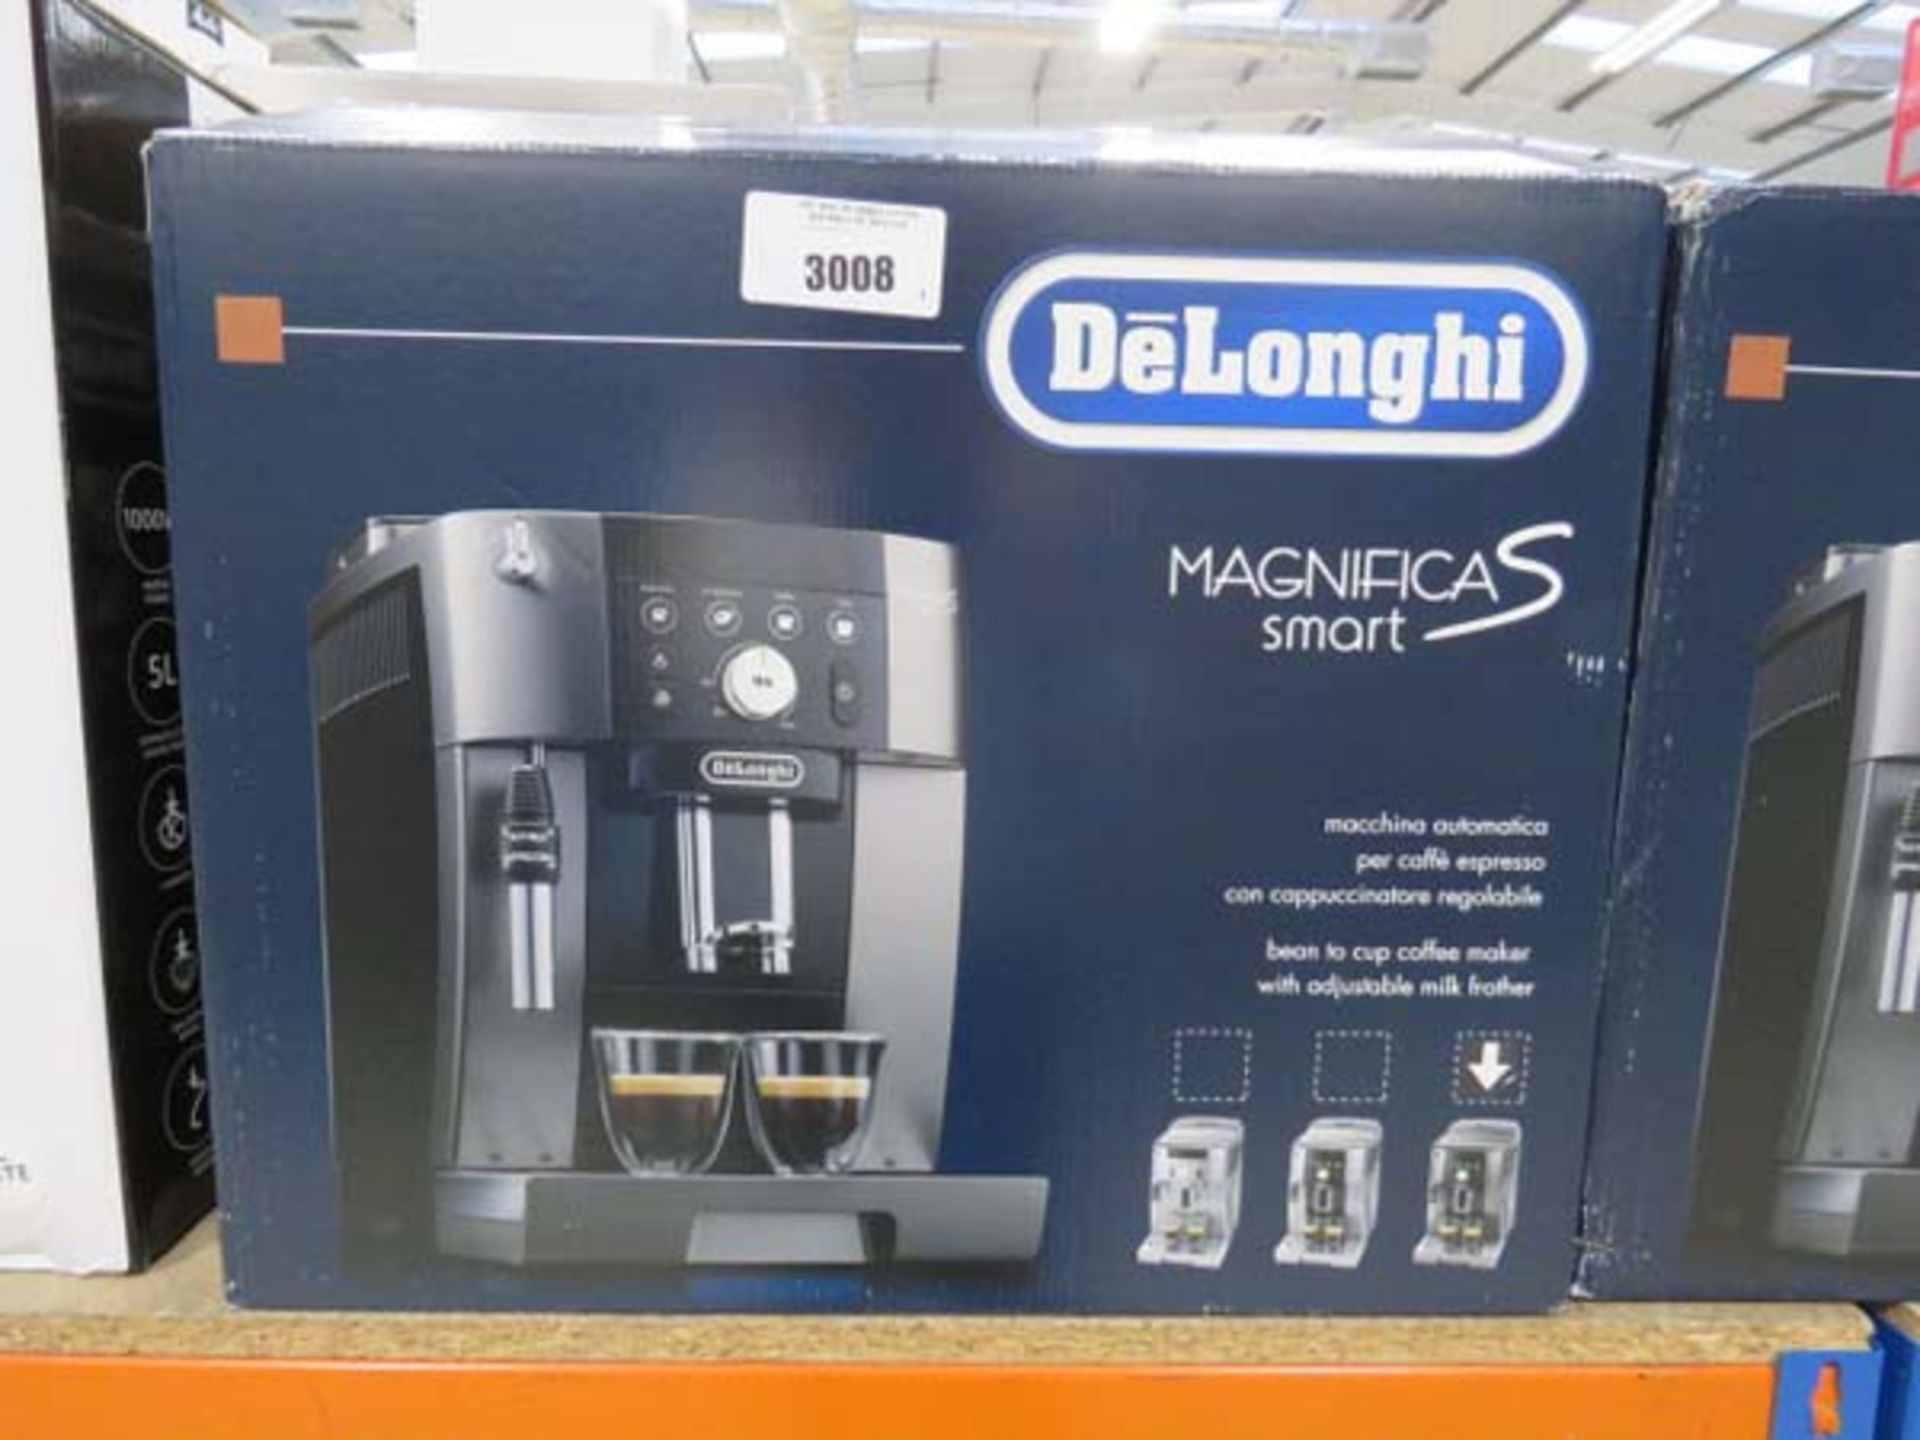 Boxed De'Longhi Magnifica Smart coffee machine